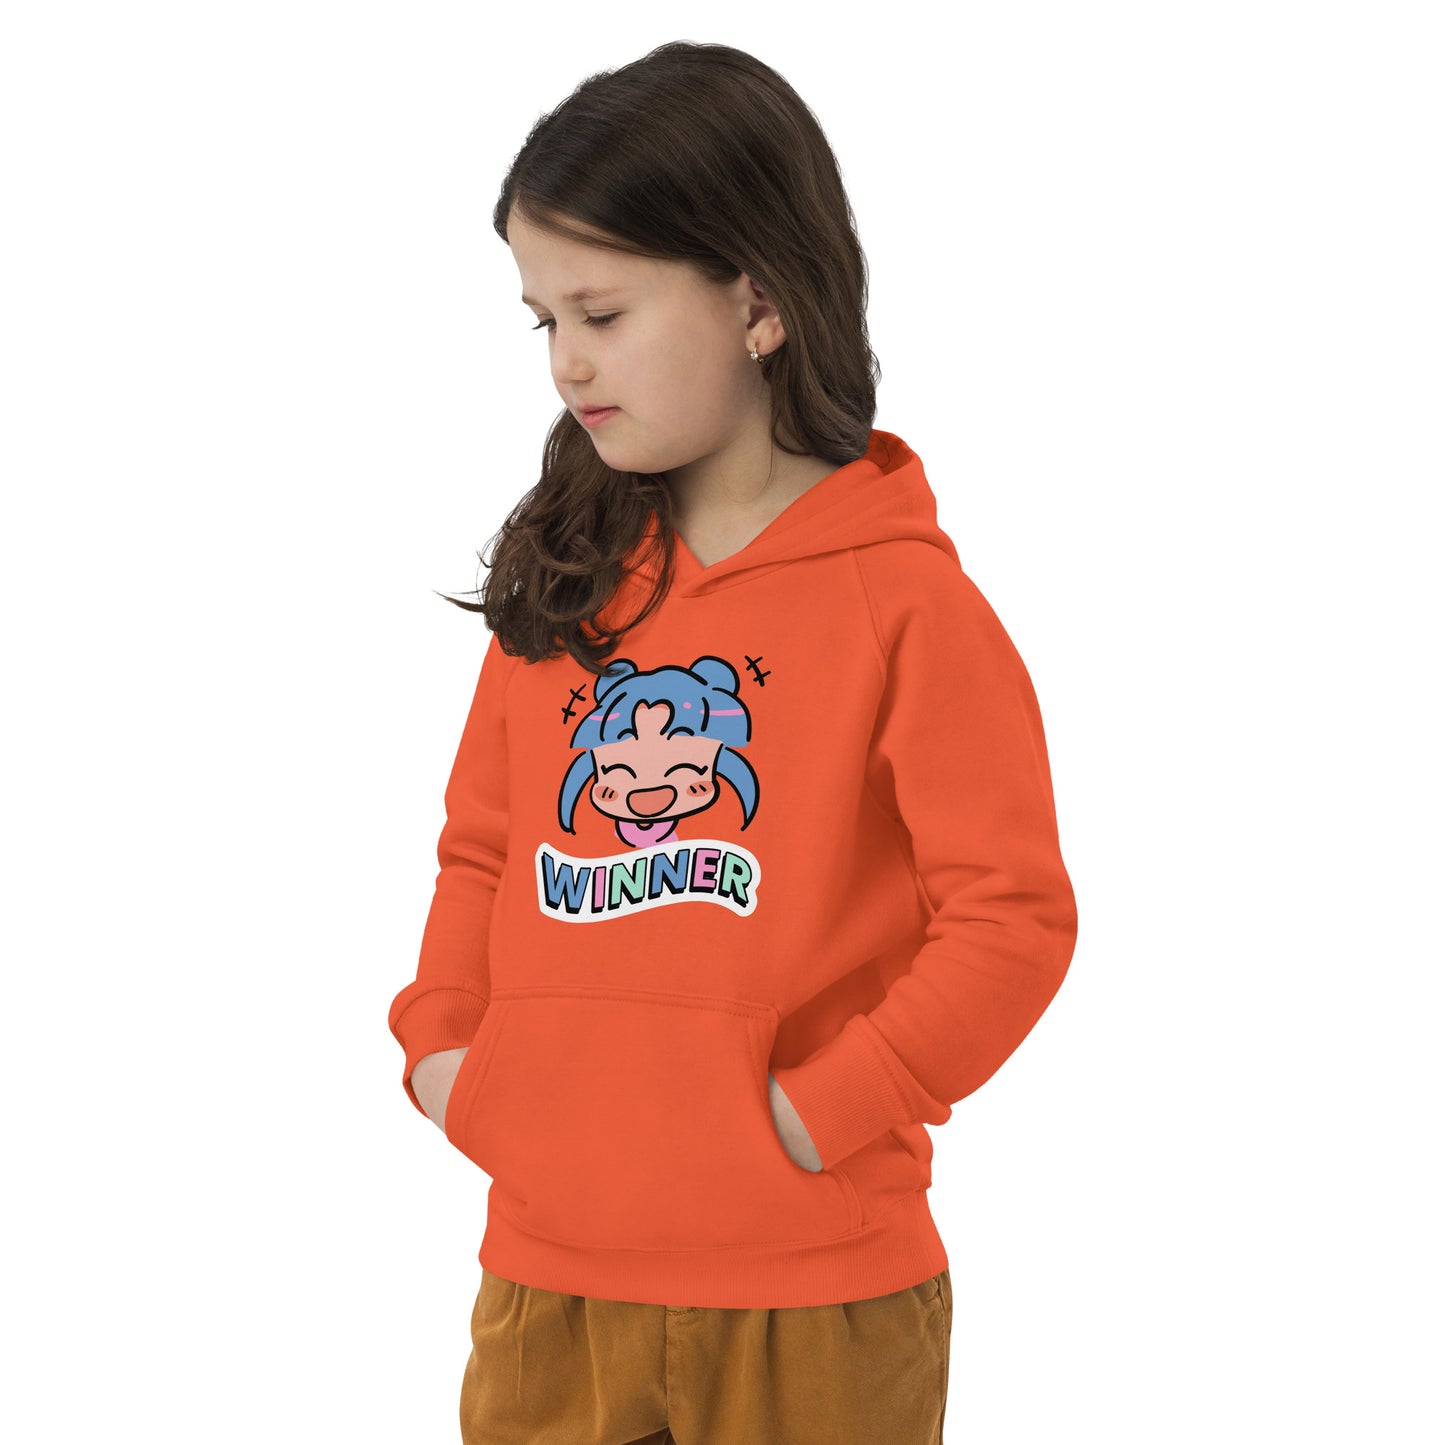 Winner - Kids eco hoodie - HobbyMeFree